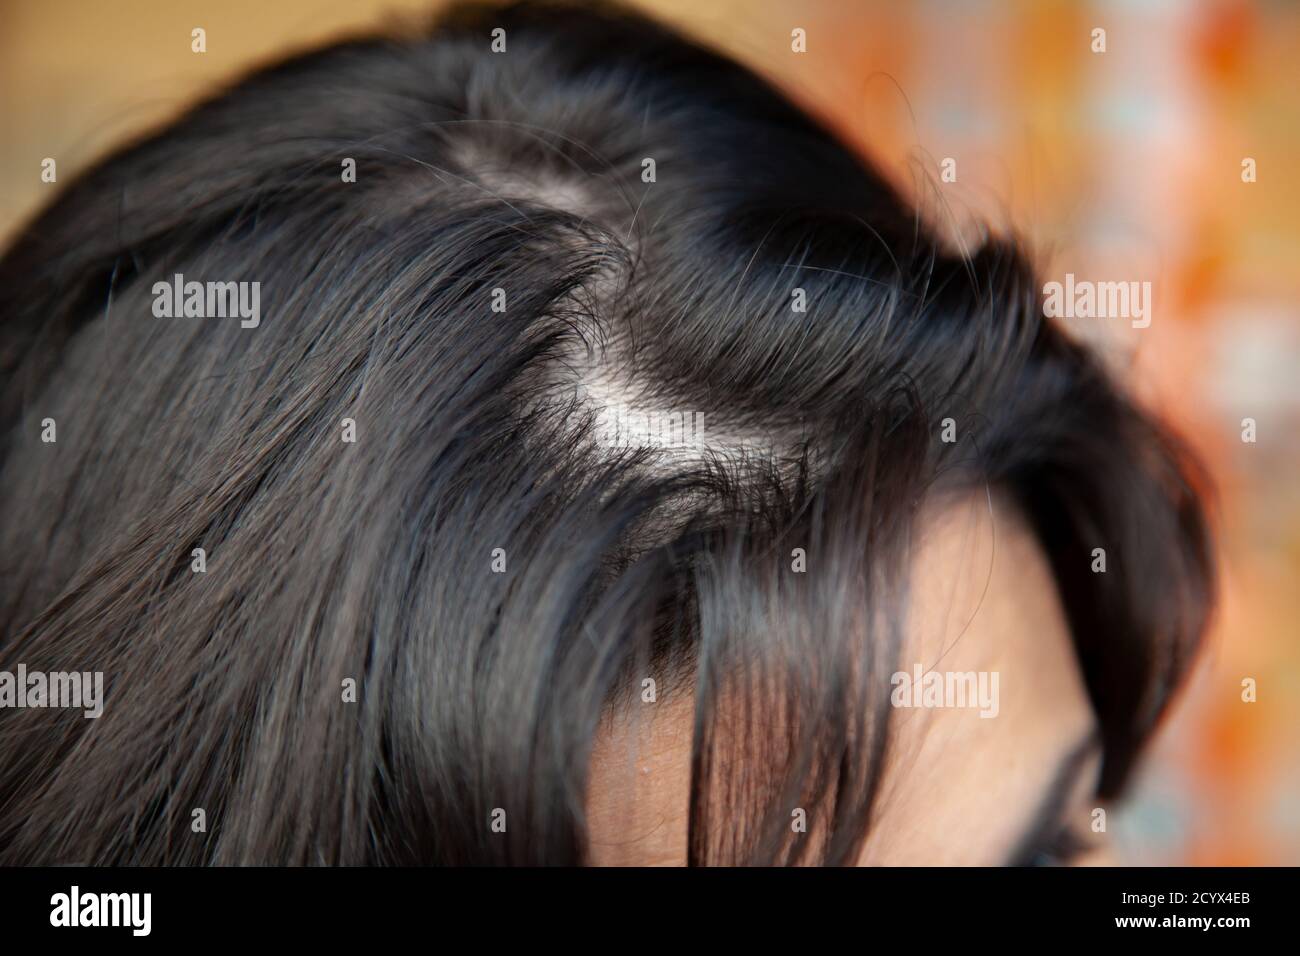 Dunner Werdendes Haar Stockfotos Und Bilder Kaufen Alamy